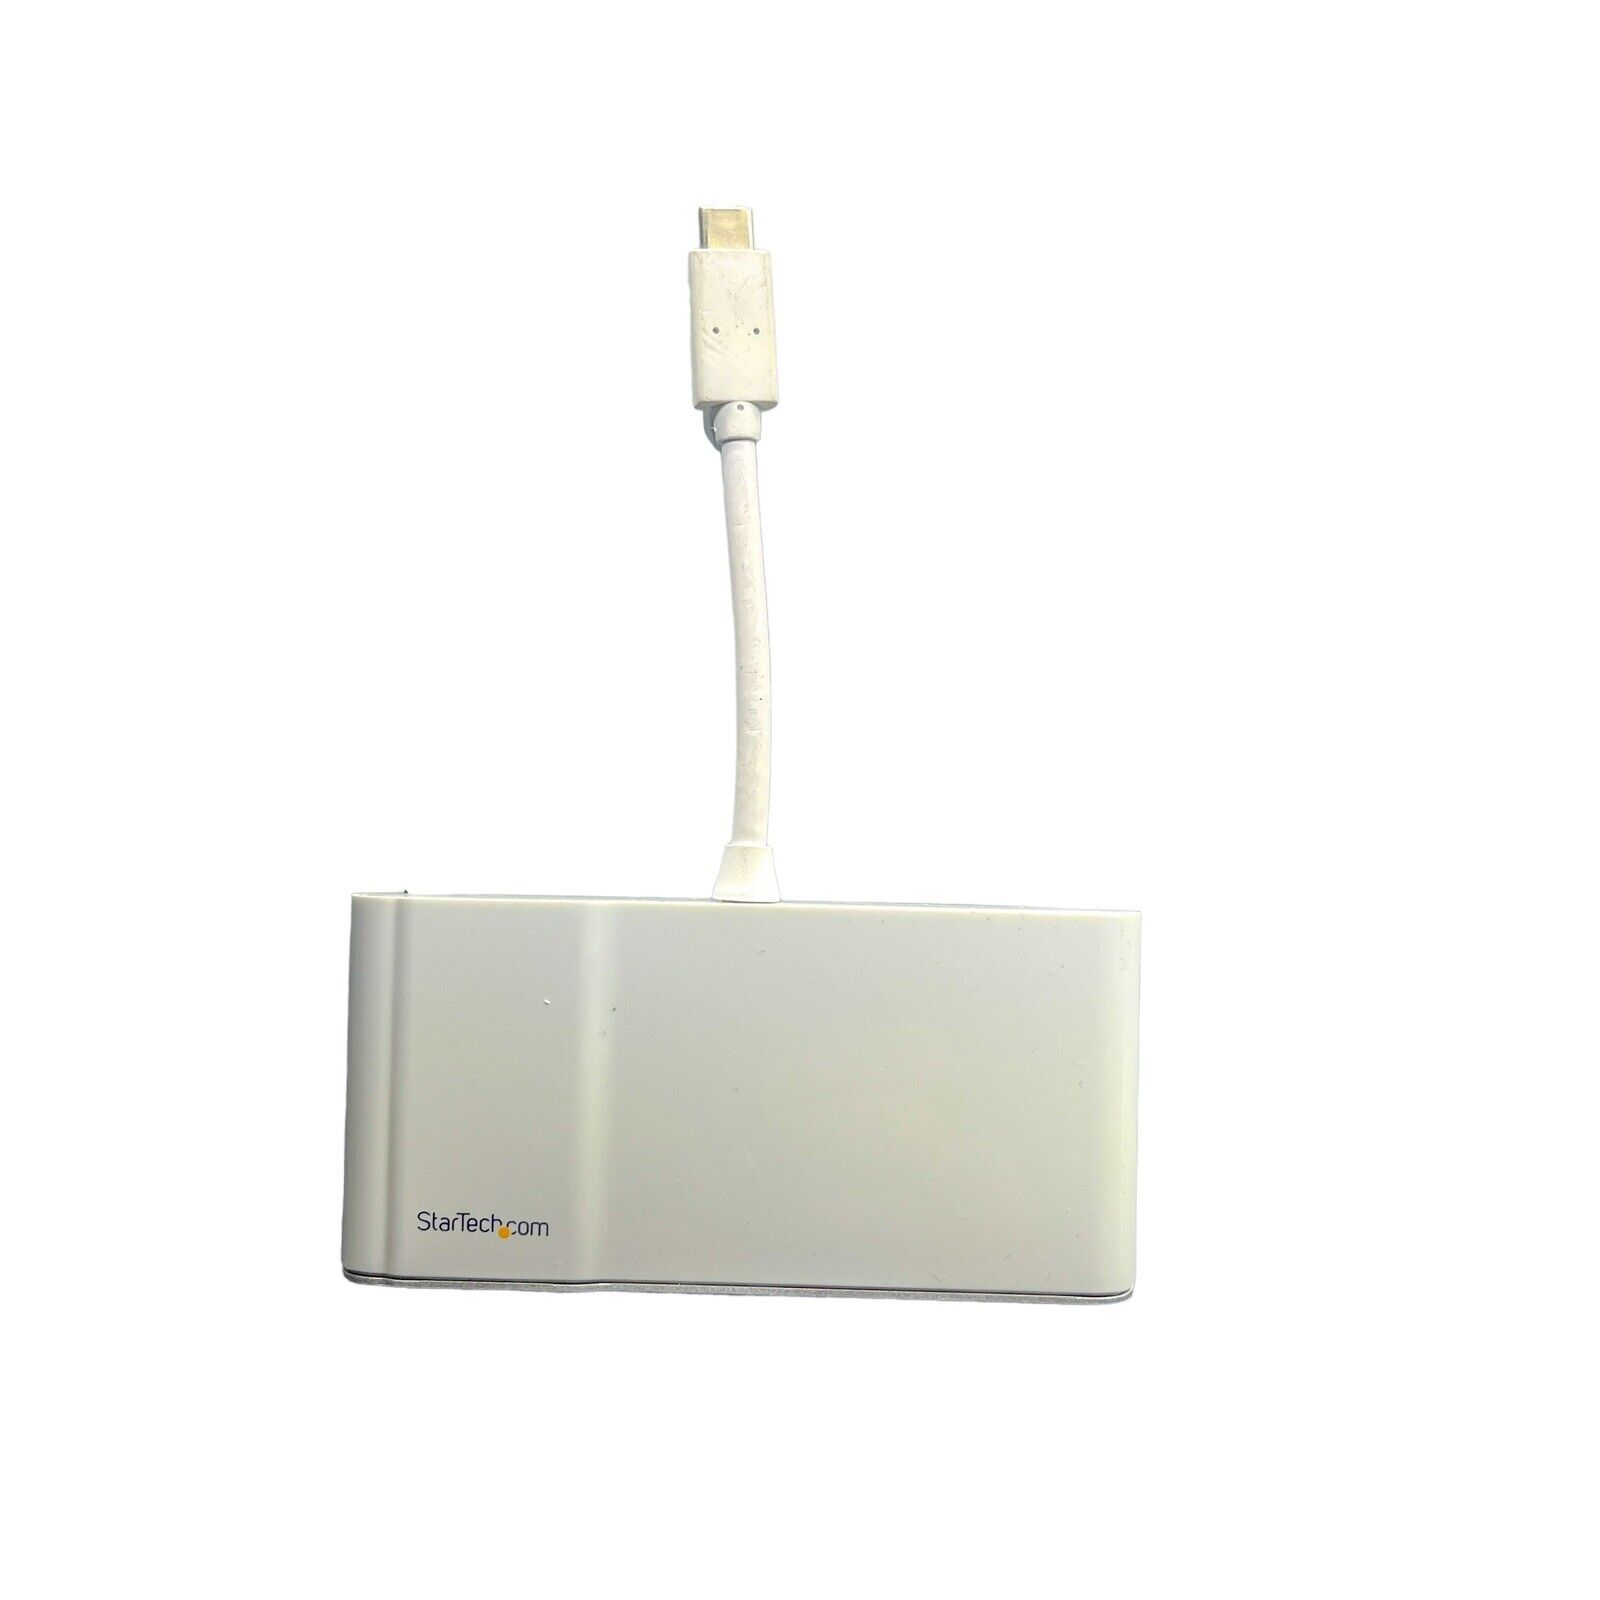 StarTech.com USB-C Multiport Adapter (DKT30CHVW) - White